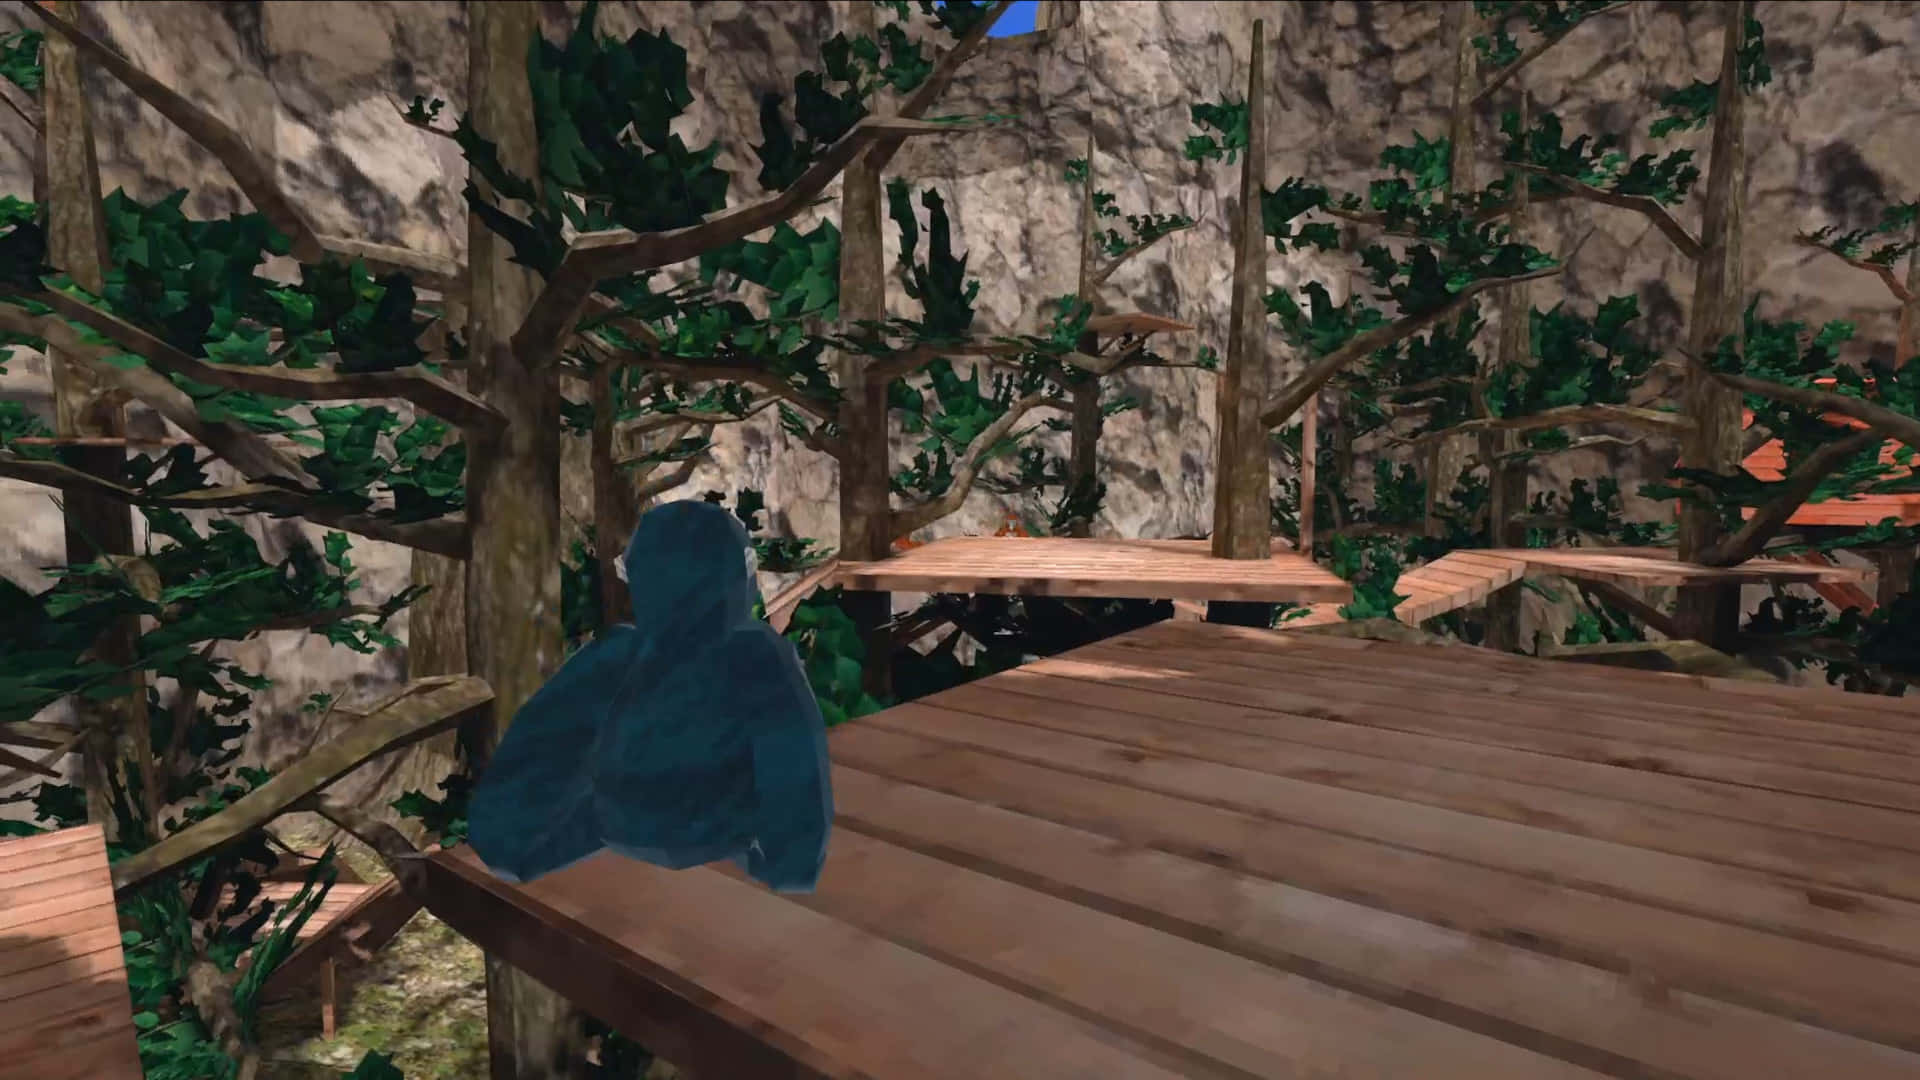 Unacaptura De Pantalla De Un Juego Con Un Pájaro En El Bosque Fondo de pantalla